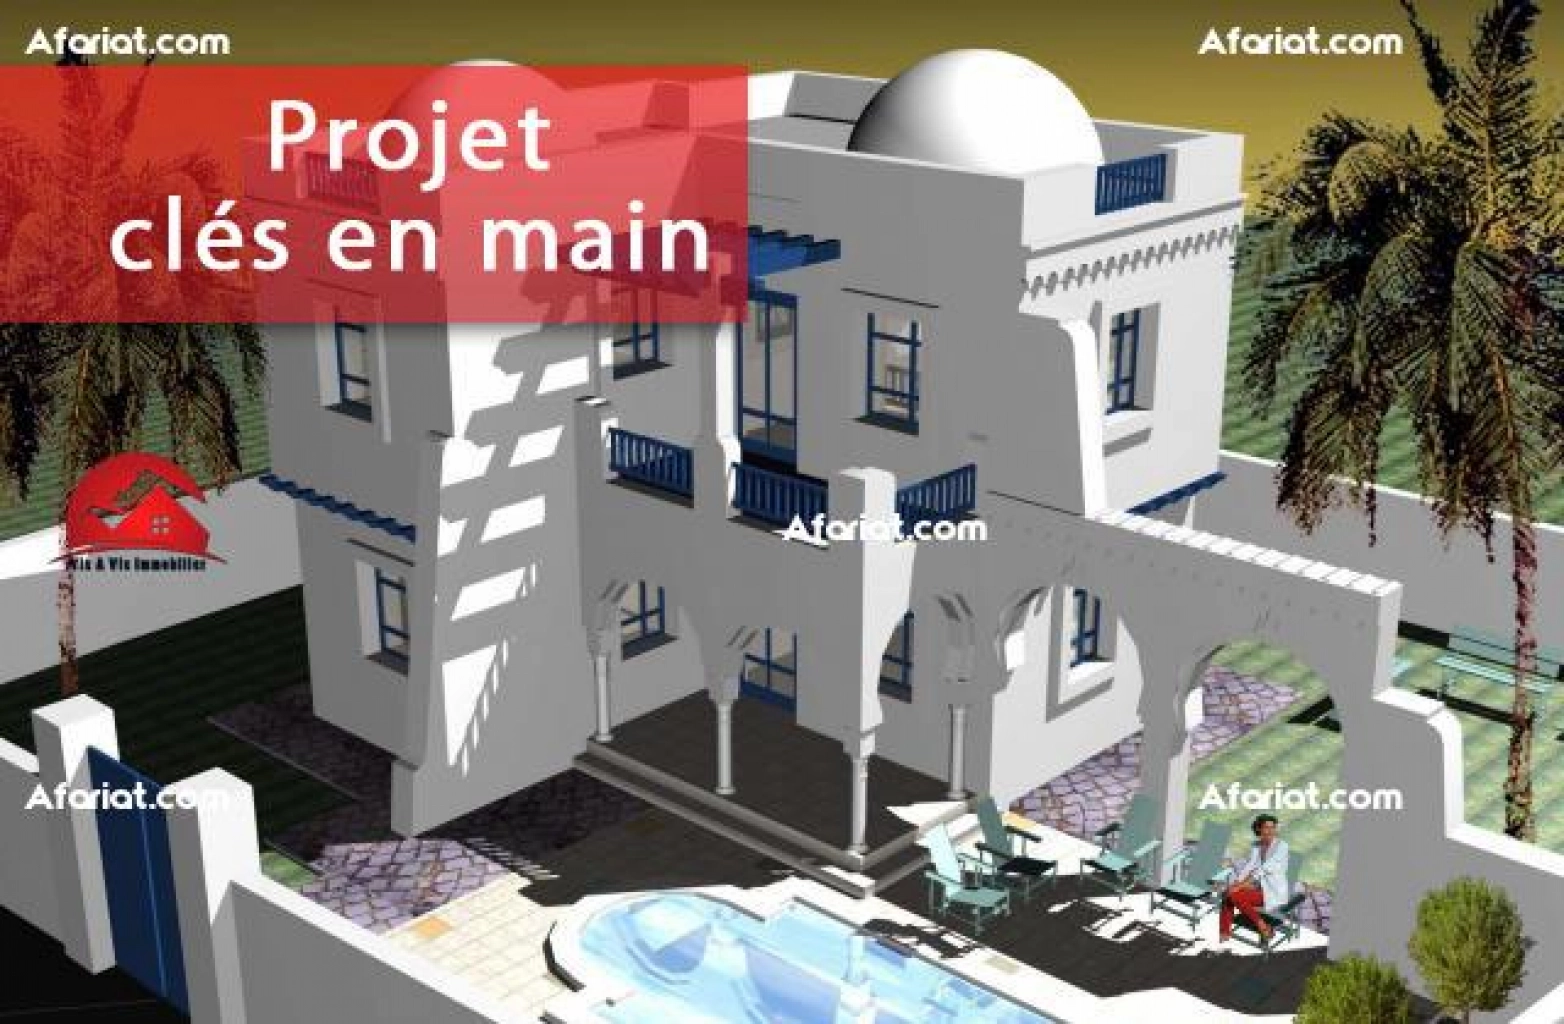 A vendre un modèle de projet d une villa avec étage a h-s djerba